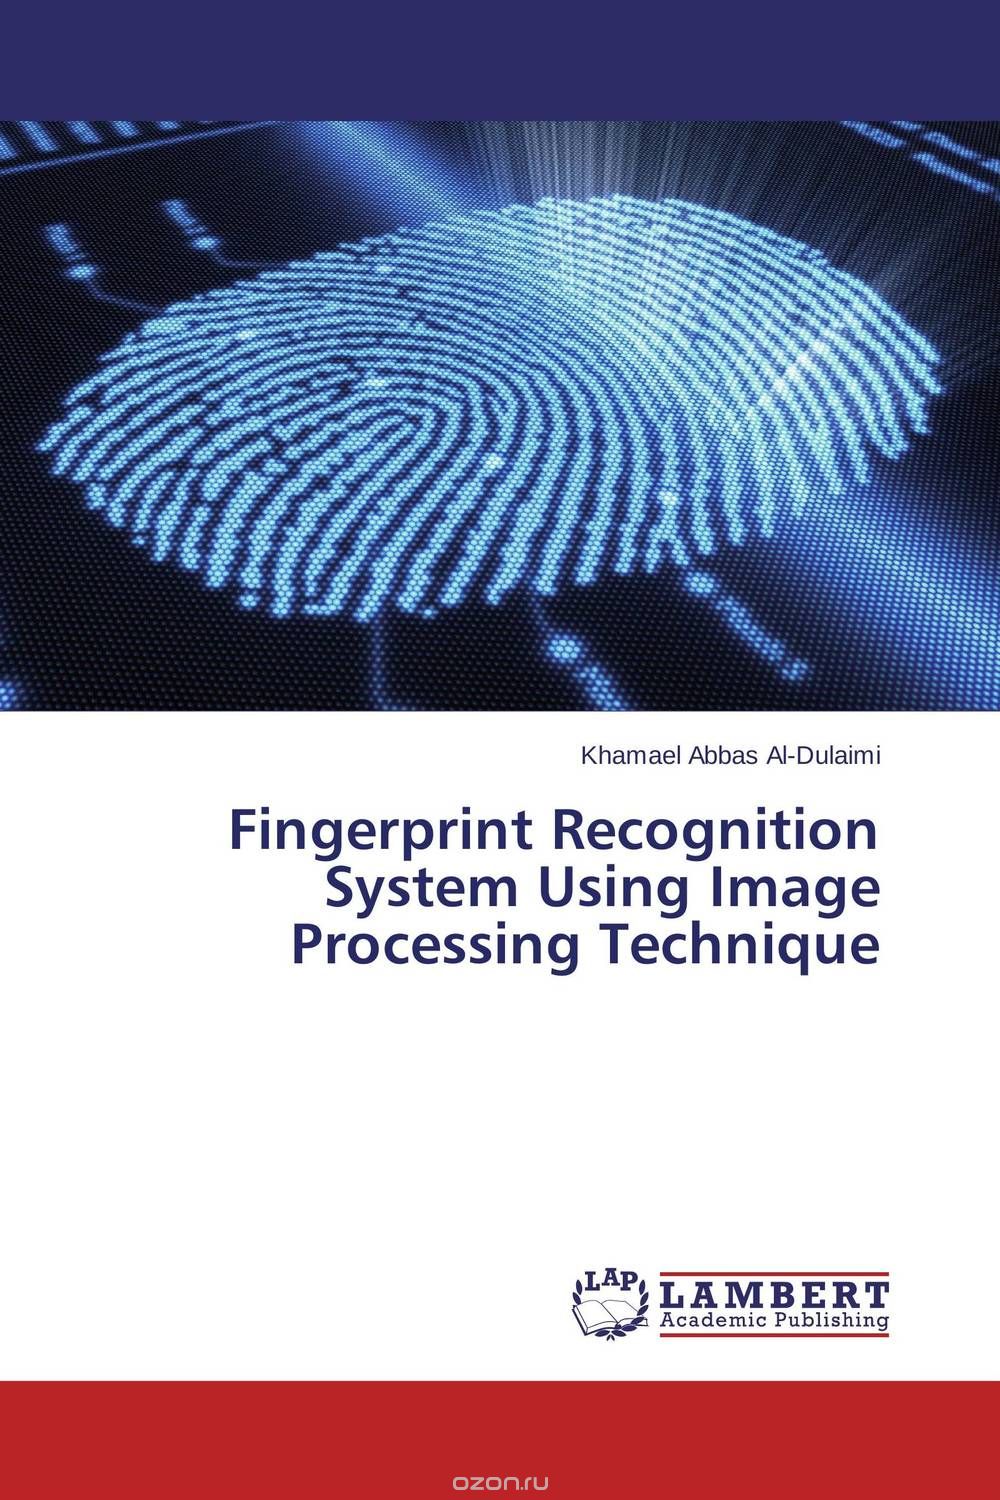 Скачать книгу "Fingerprint Recognition System Using Image Processing Technique"